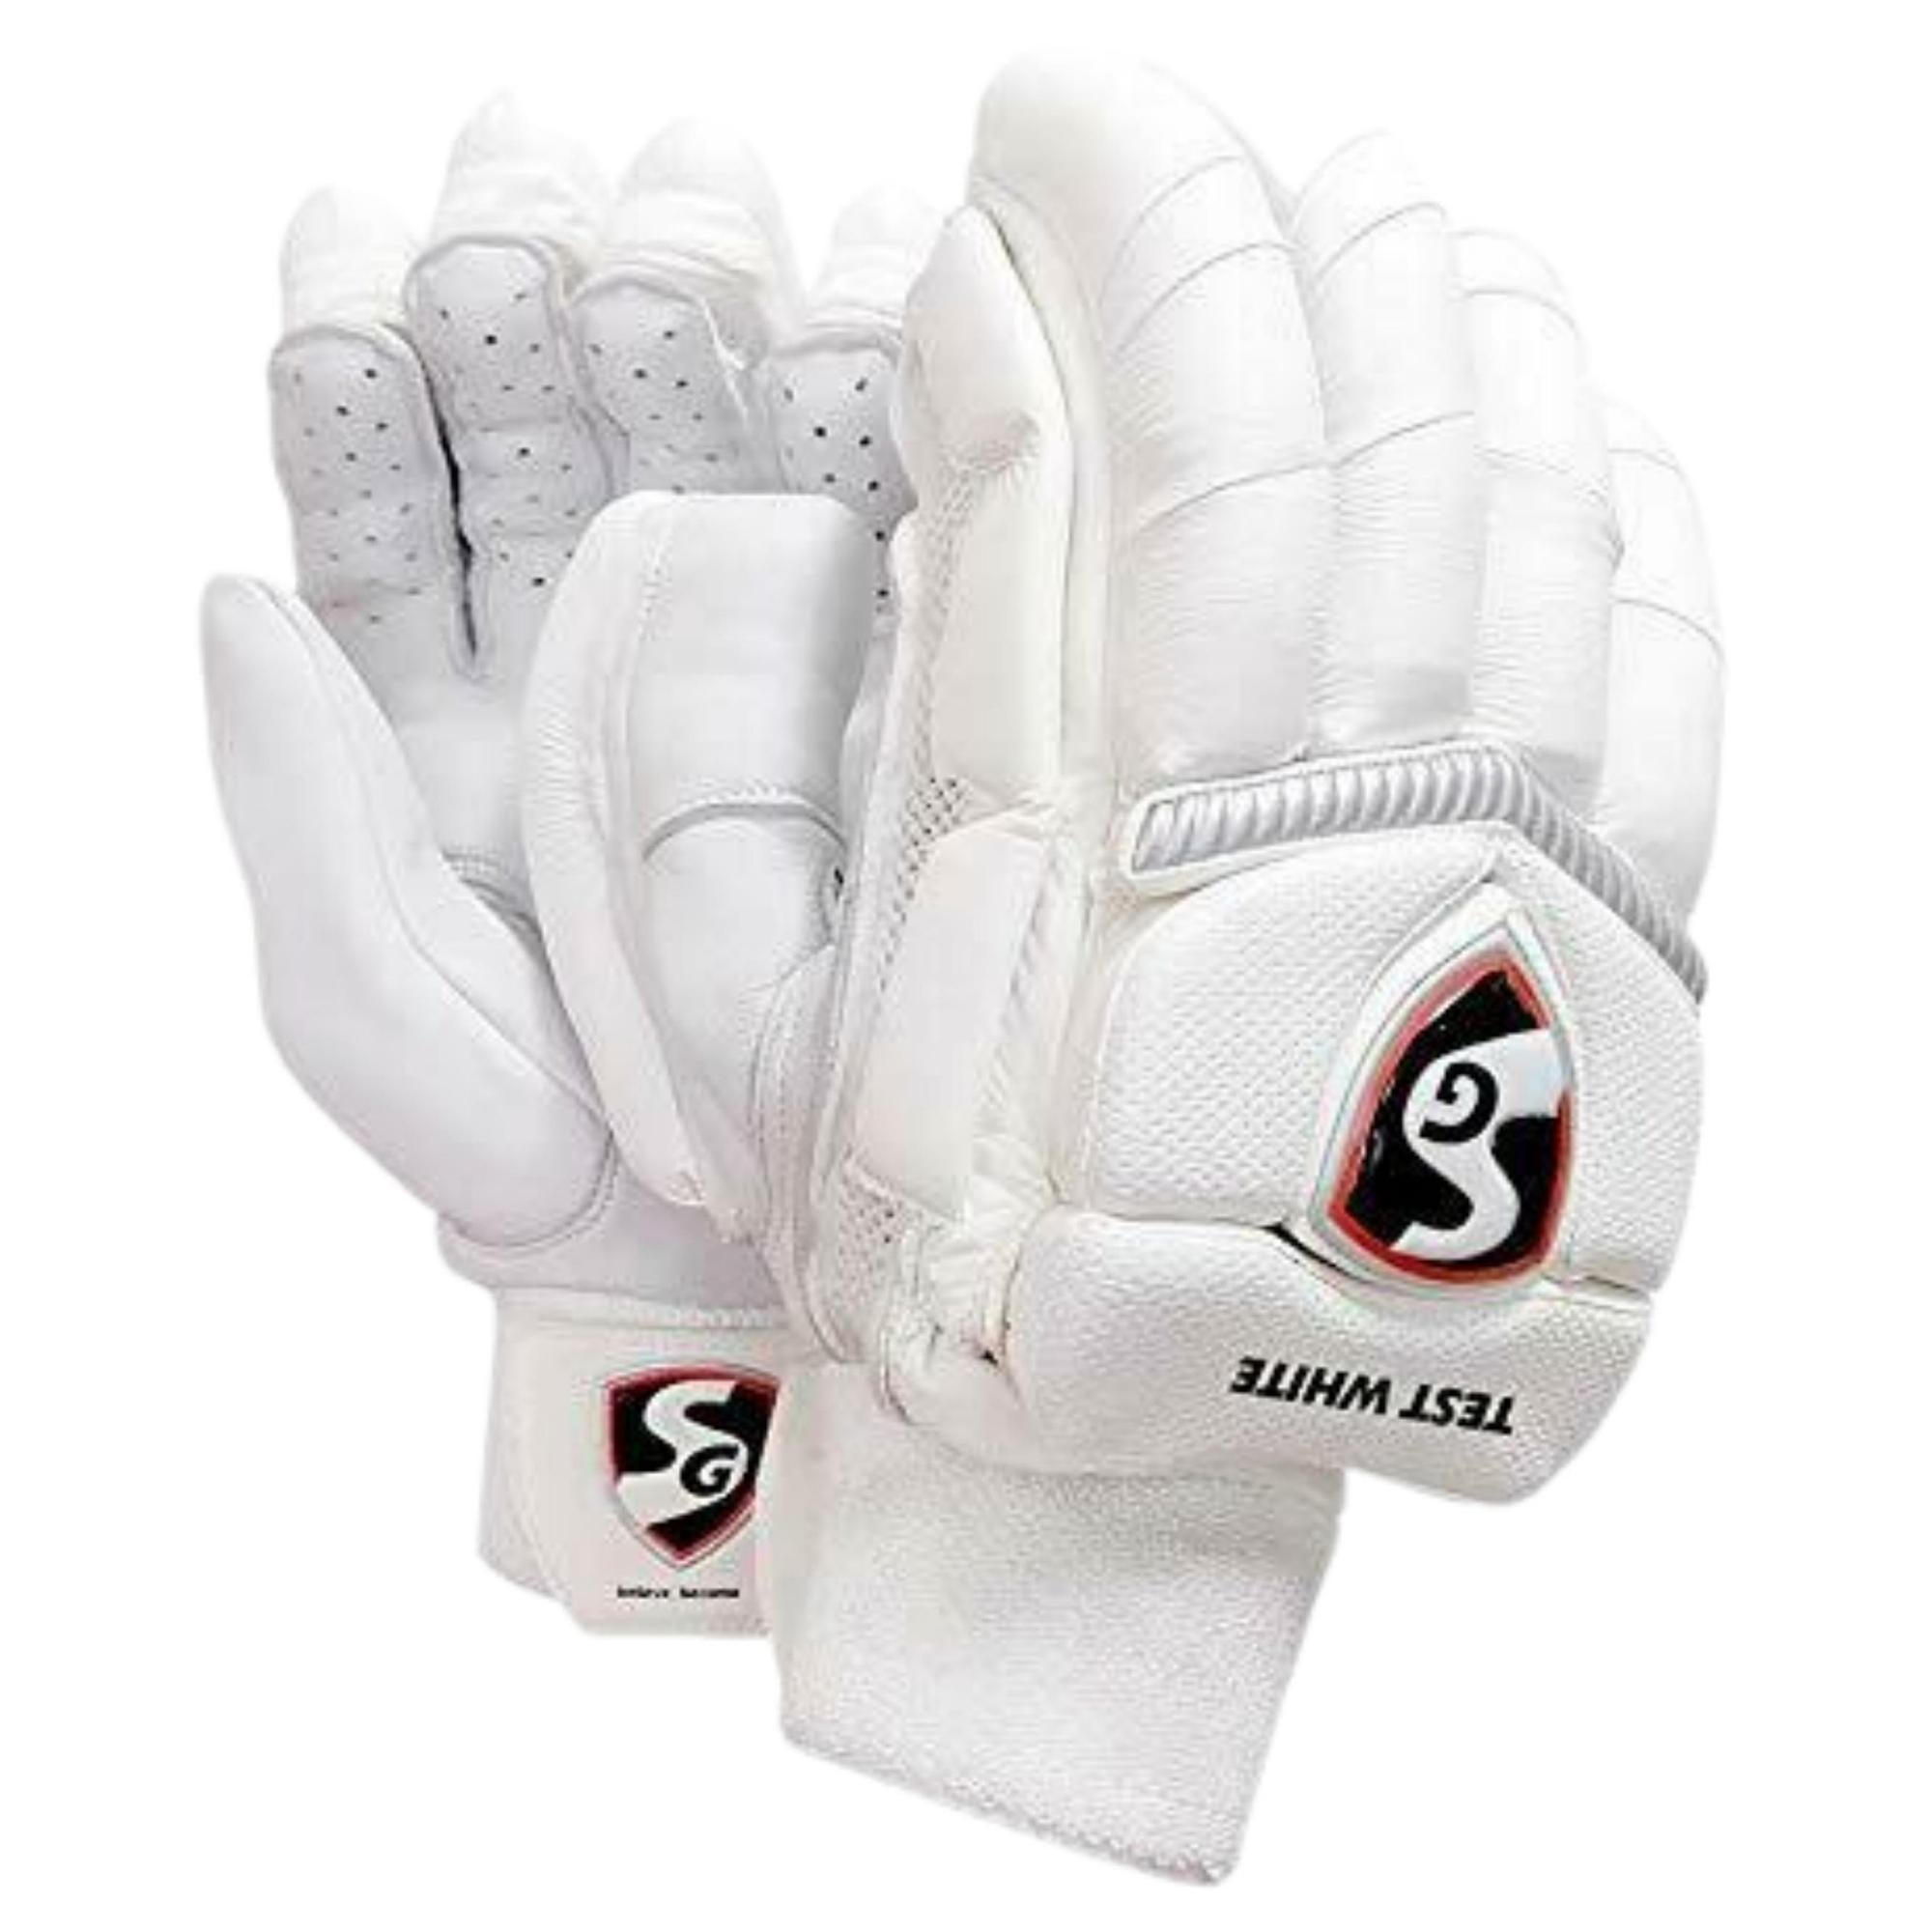 SG Batting Gloves TEST WHITE